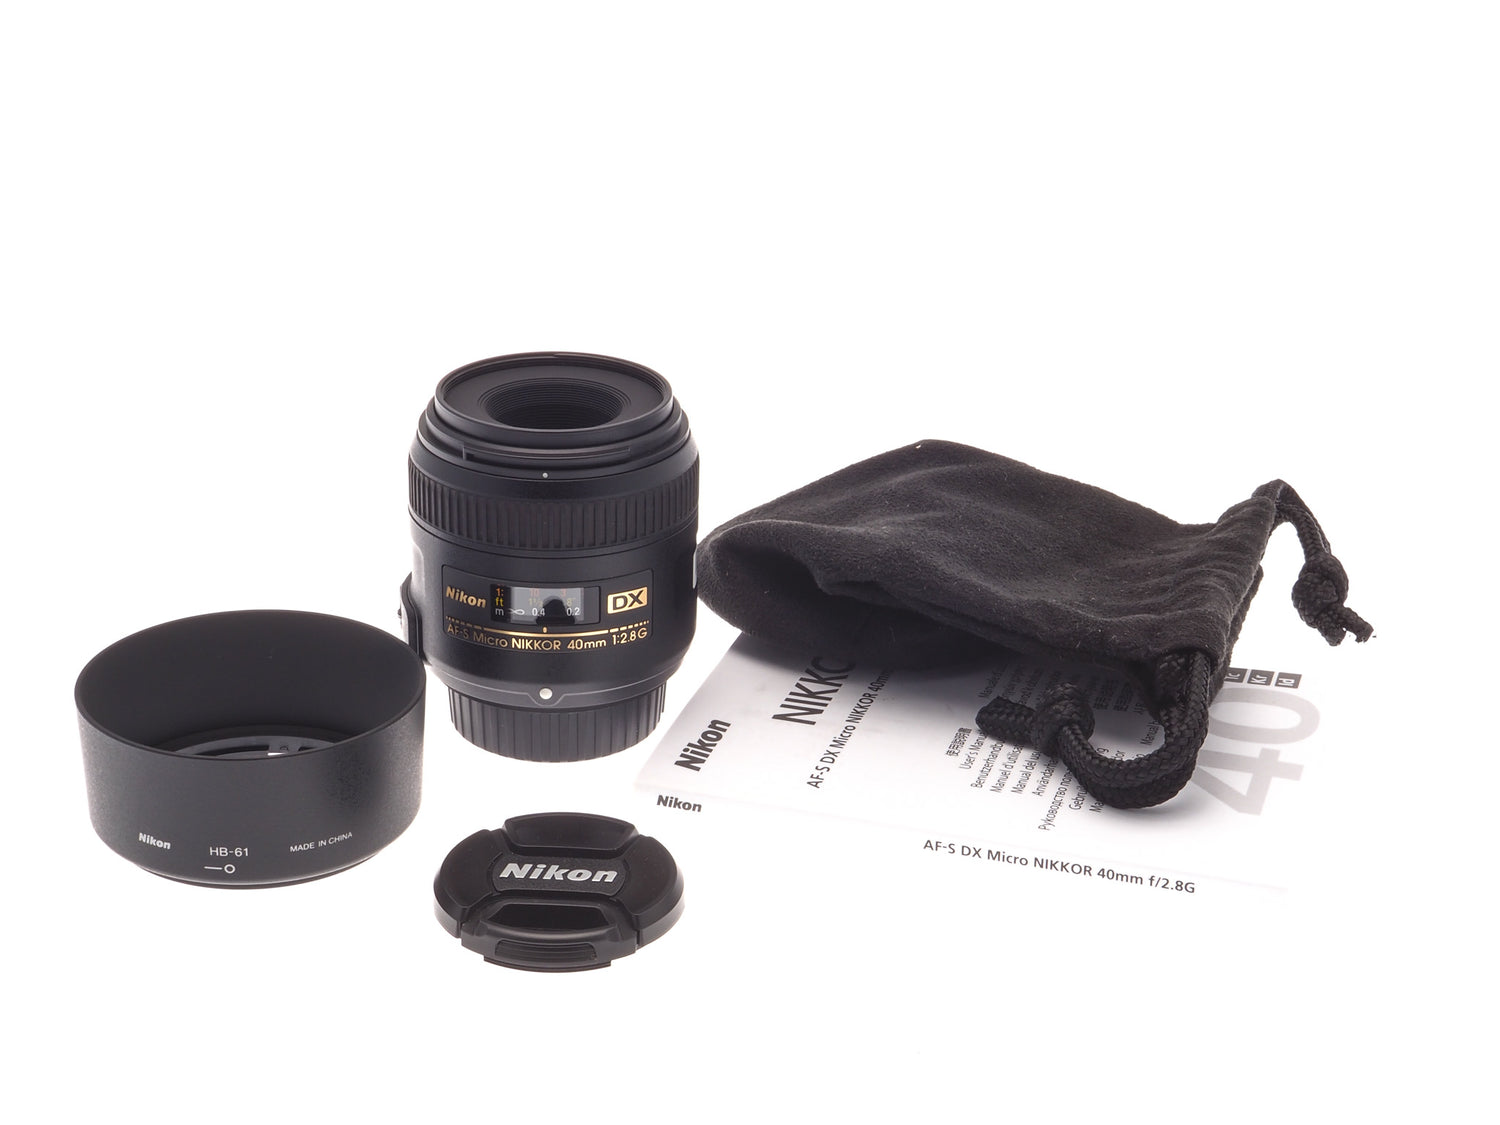 Nikon 40mm f2.8 G AF-S DX Micro Nikkor